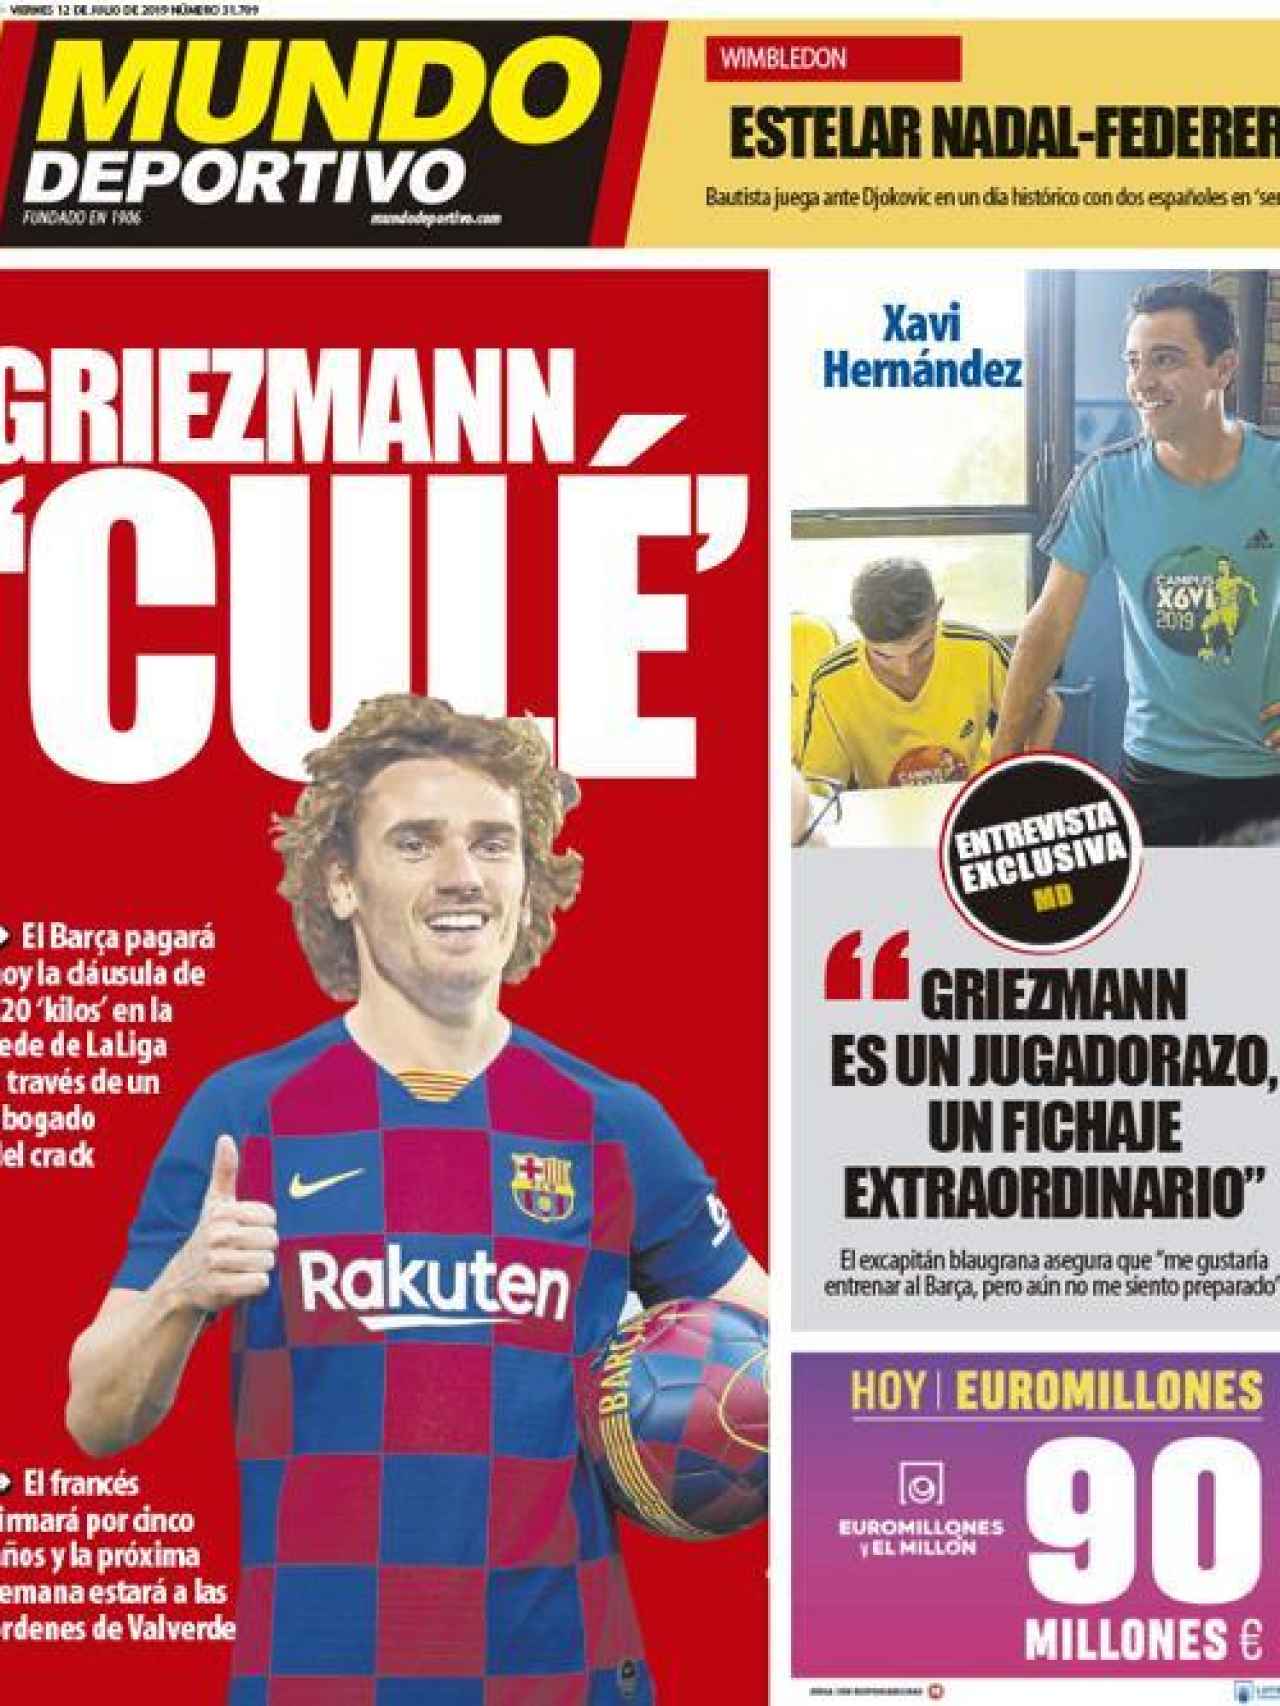 La portada del diario Mundo Deportivo (12/07/2019)